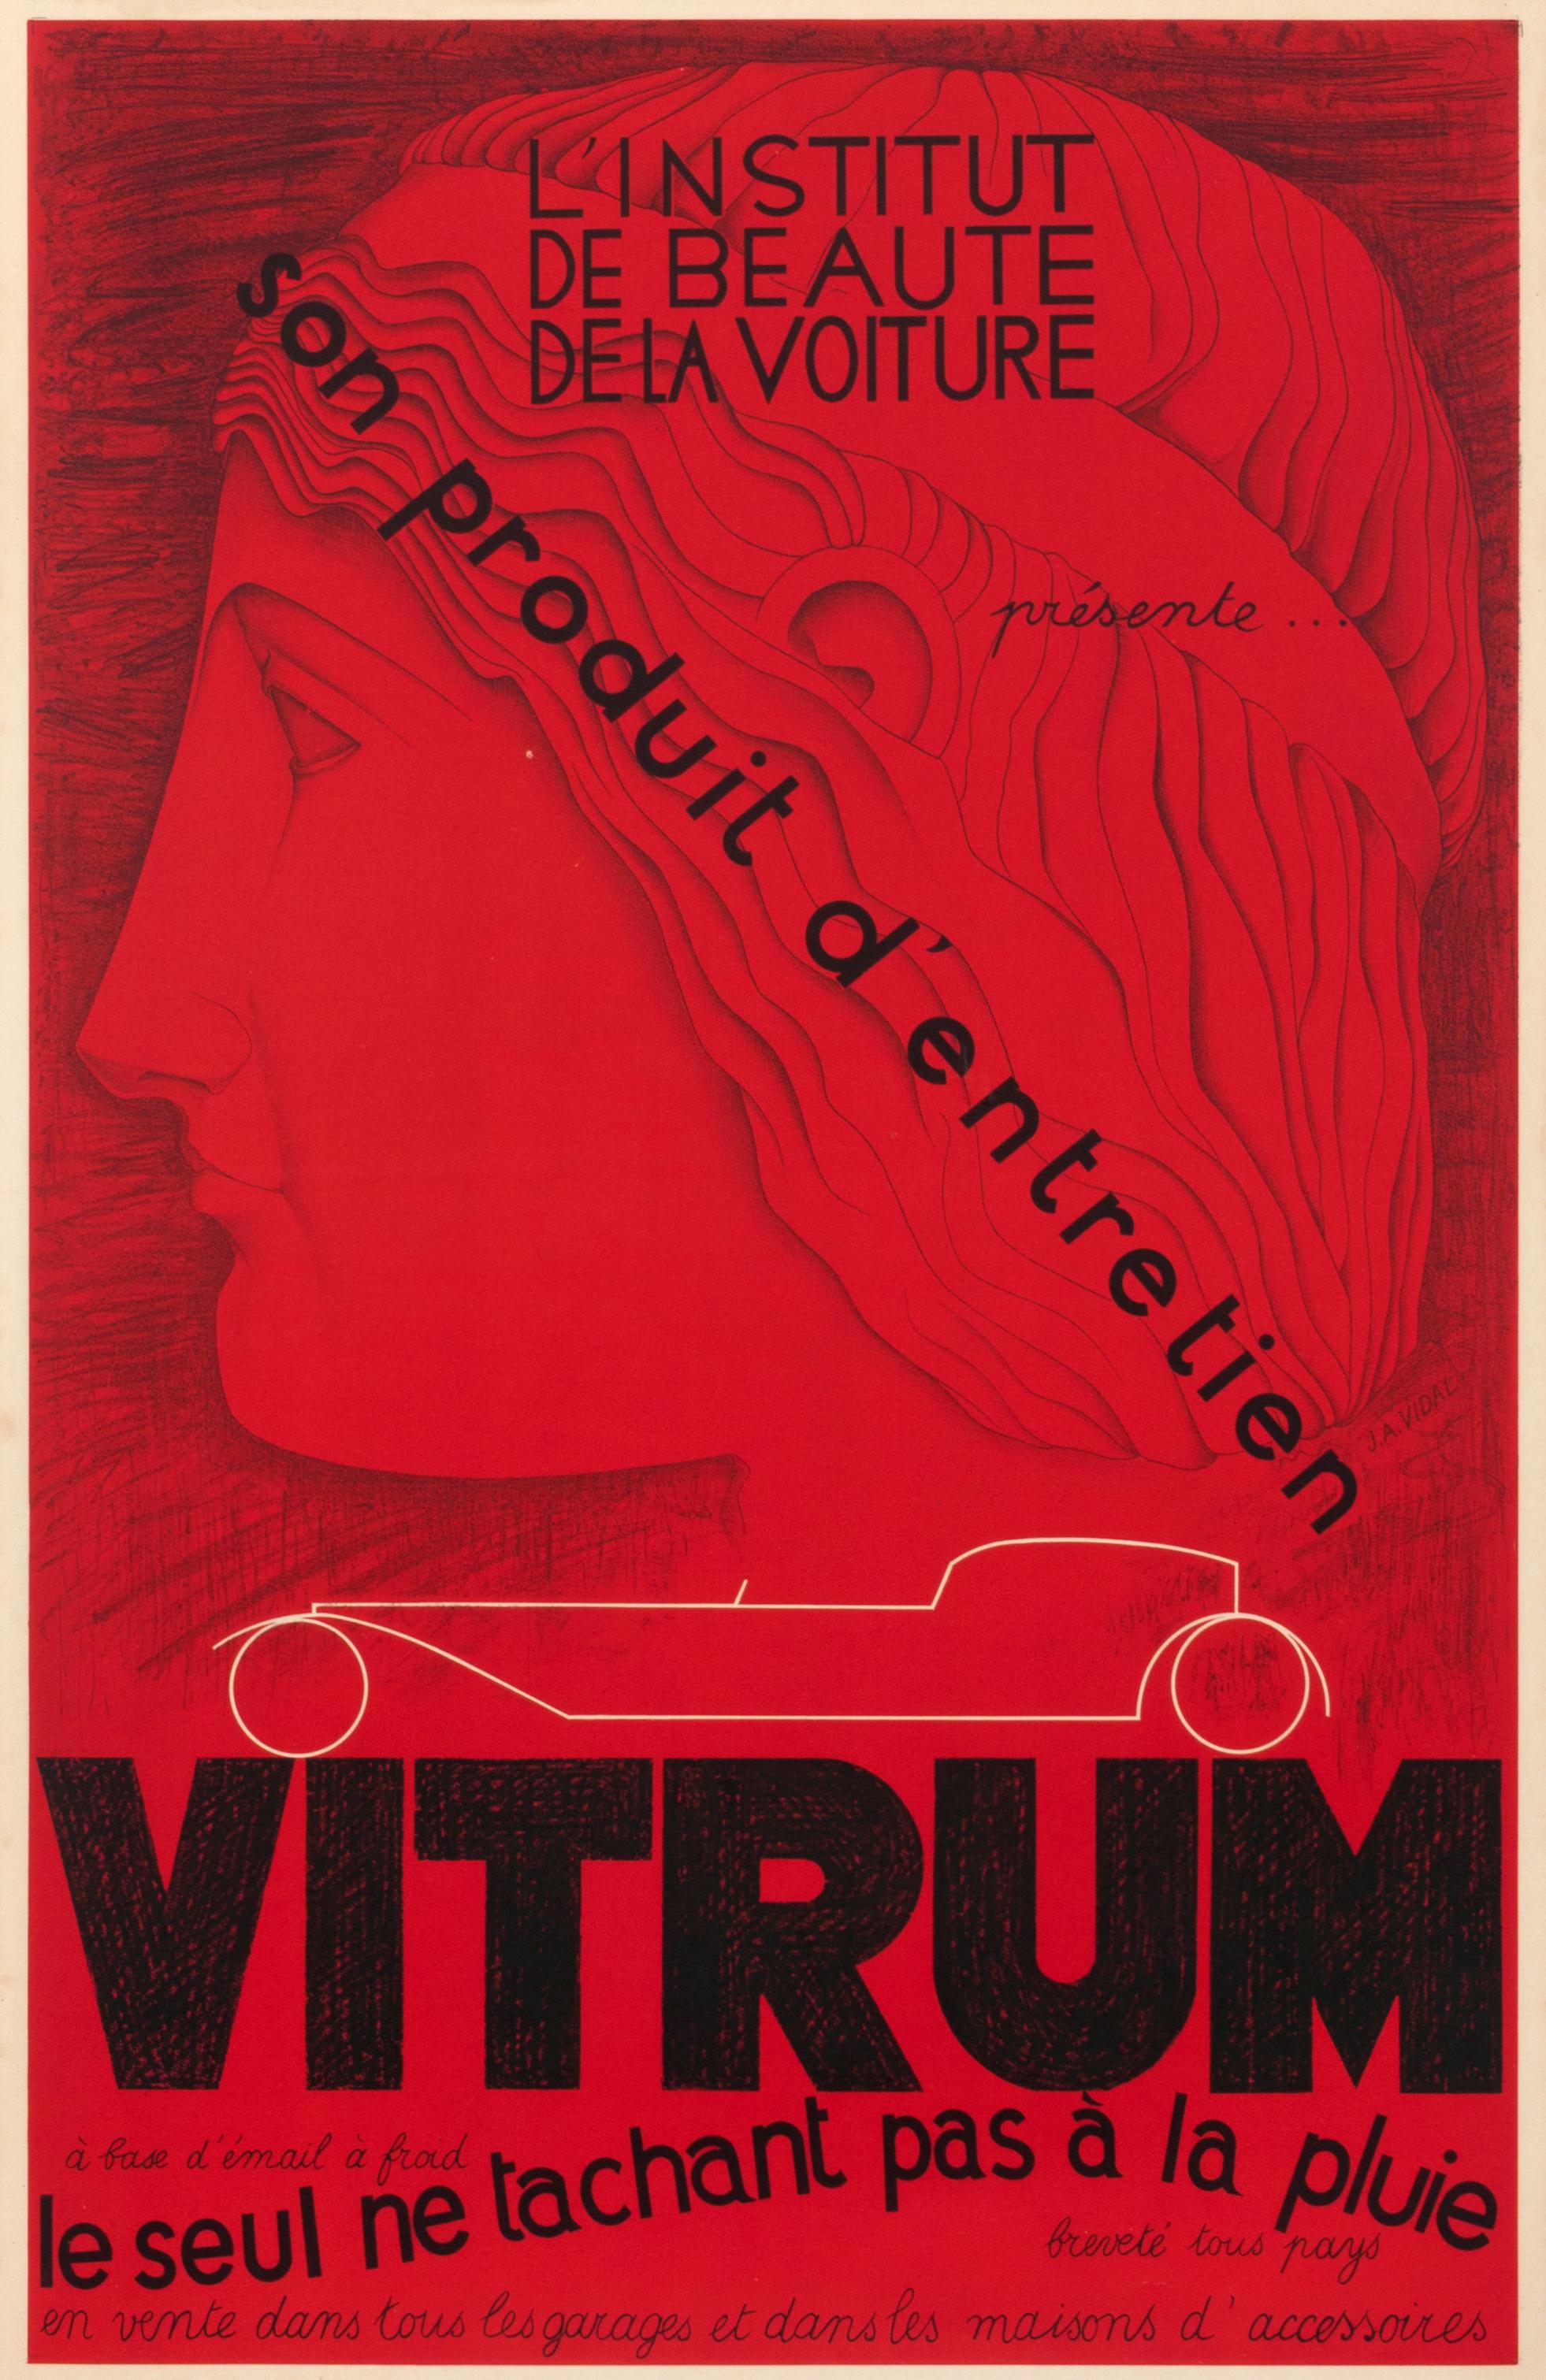 J.A. Vidal Portrait Print - "Vitrum" Original Vintage French Art Deco Automobile Car Product Poster